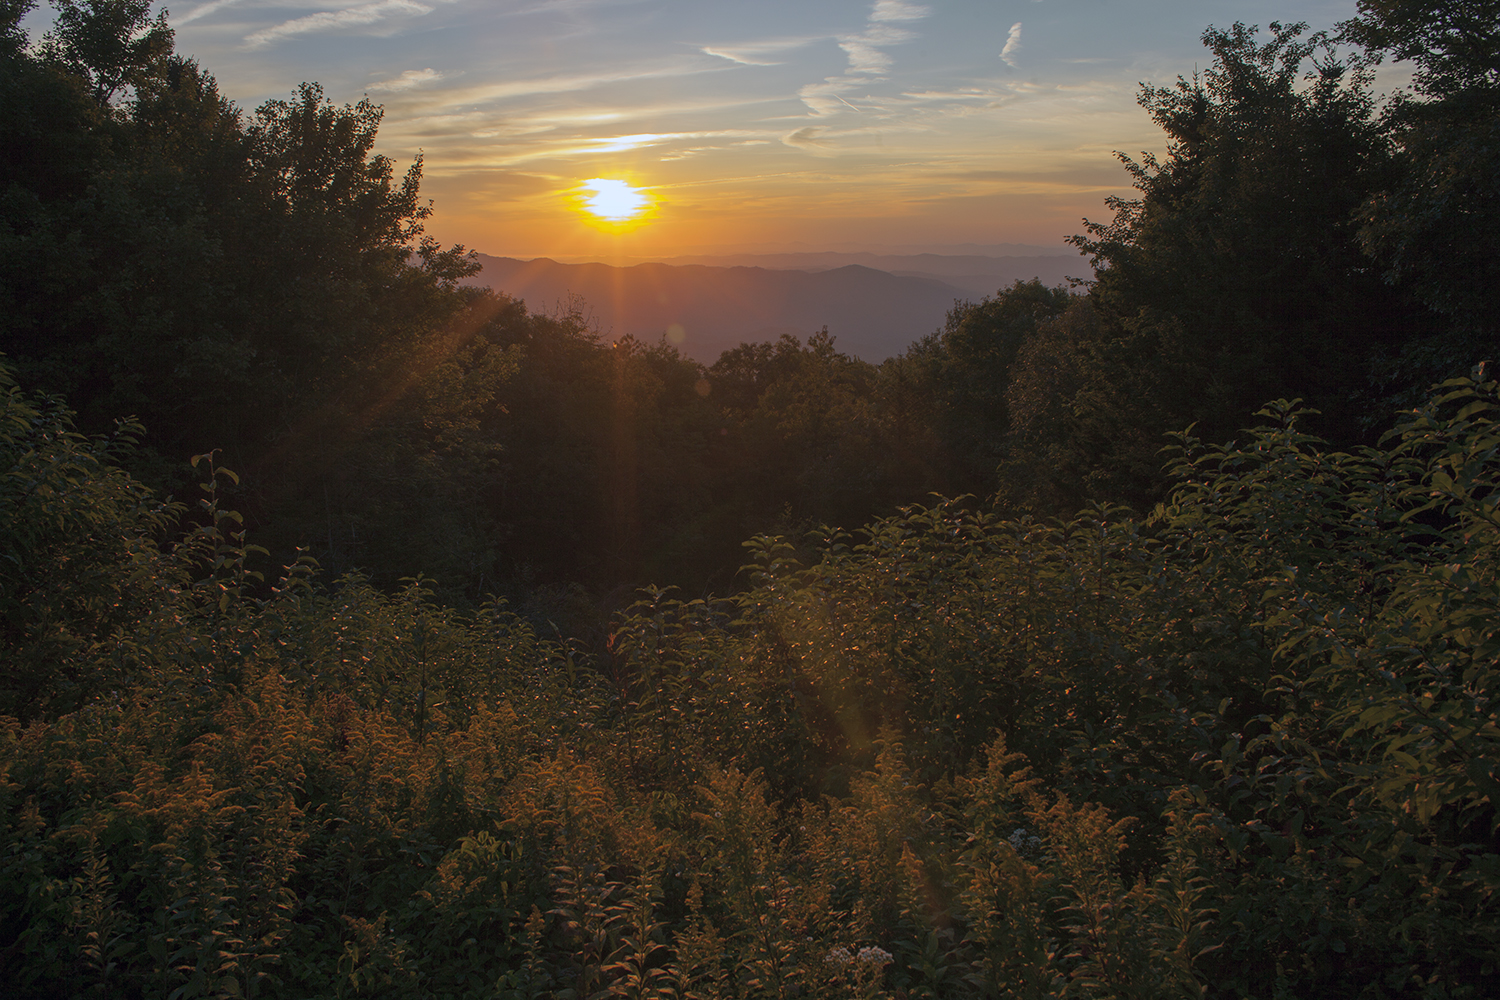  Appalachian Sunrise  North Carolina, 2015 